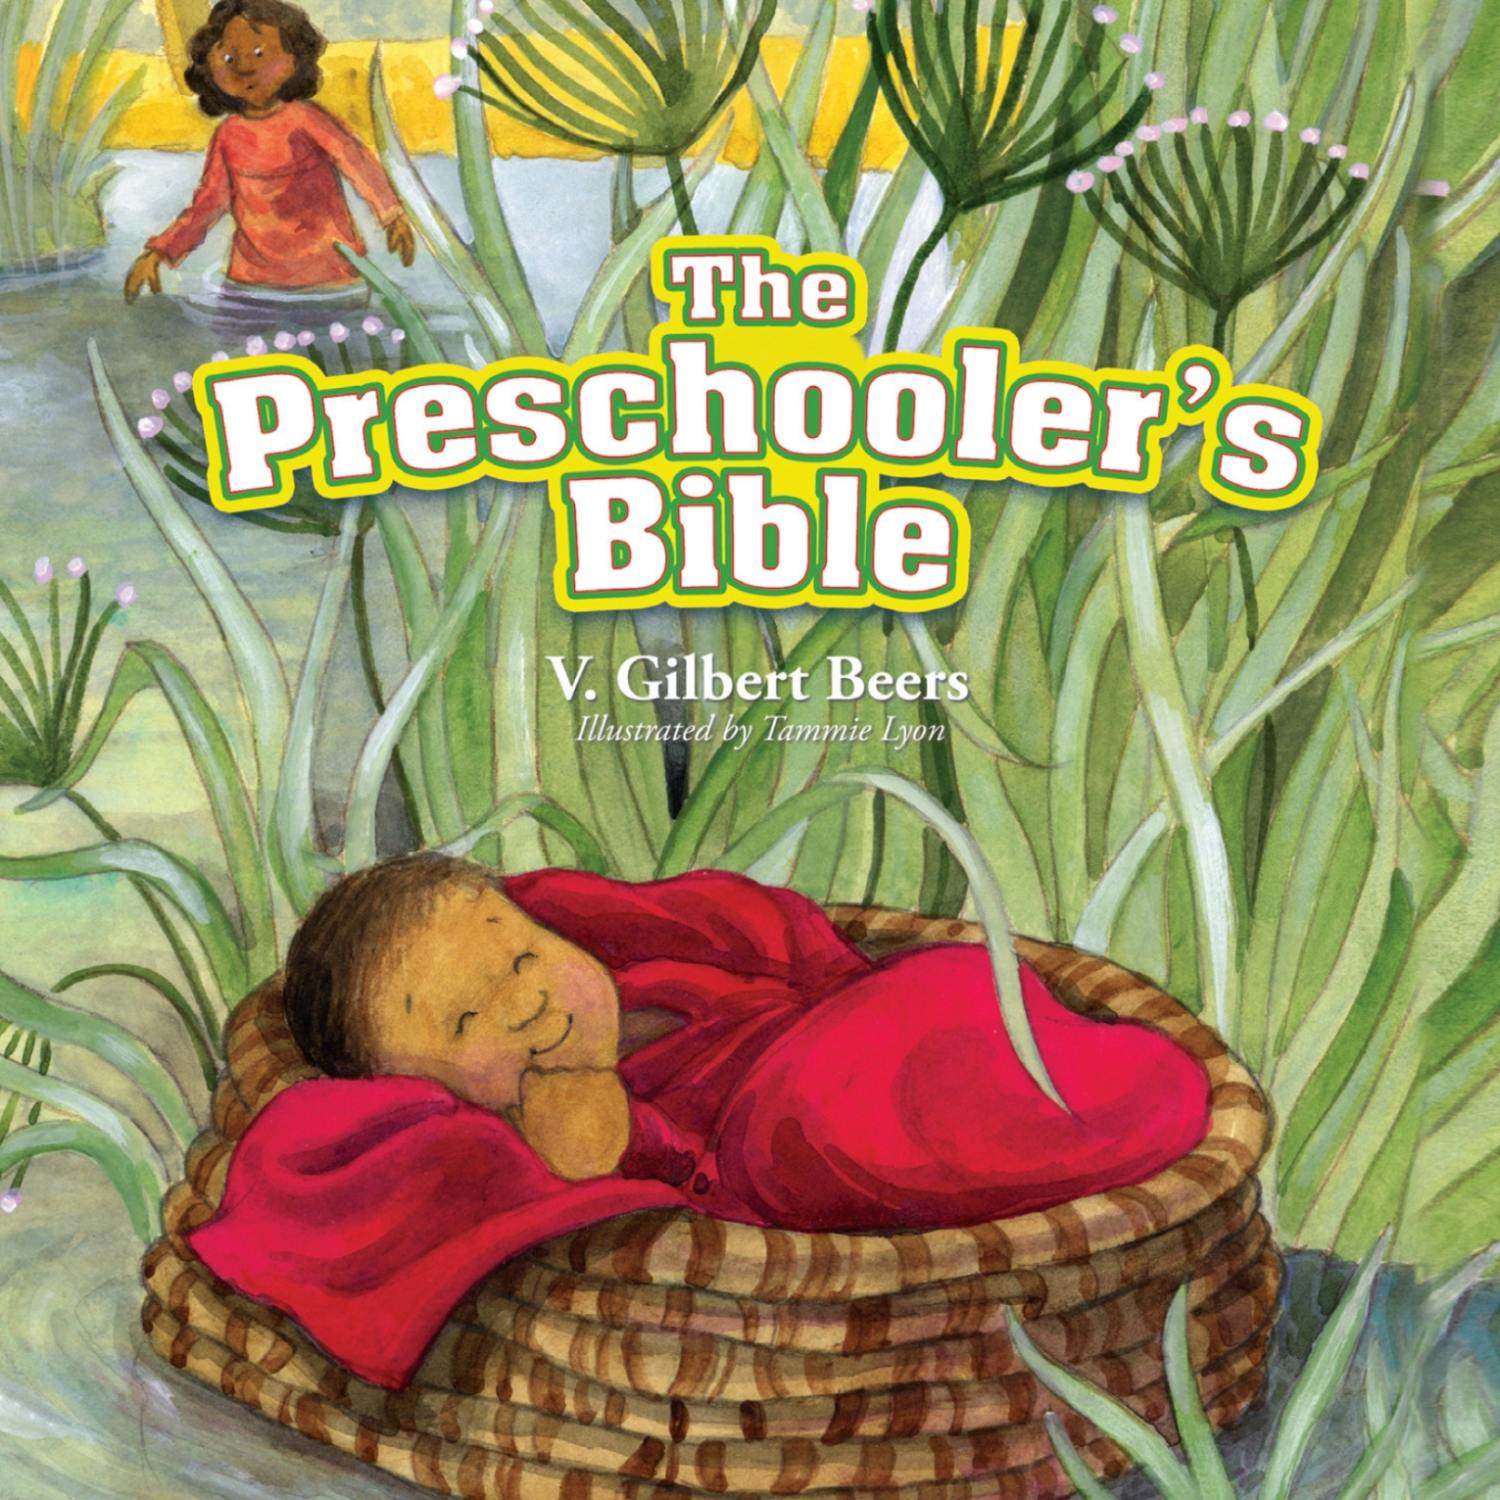 The Preschooler's Bible - undefined